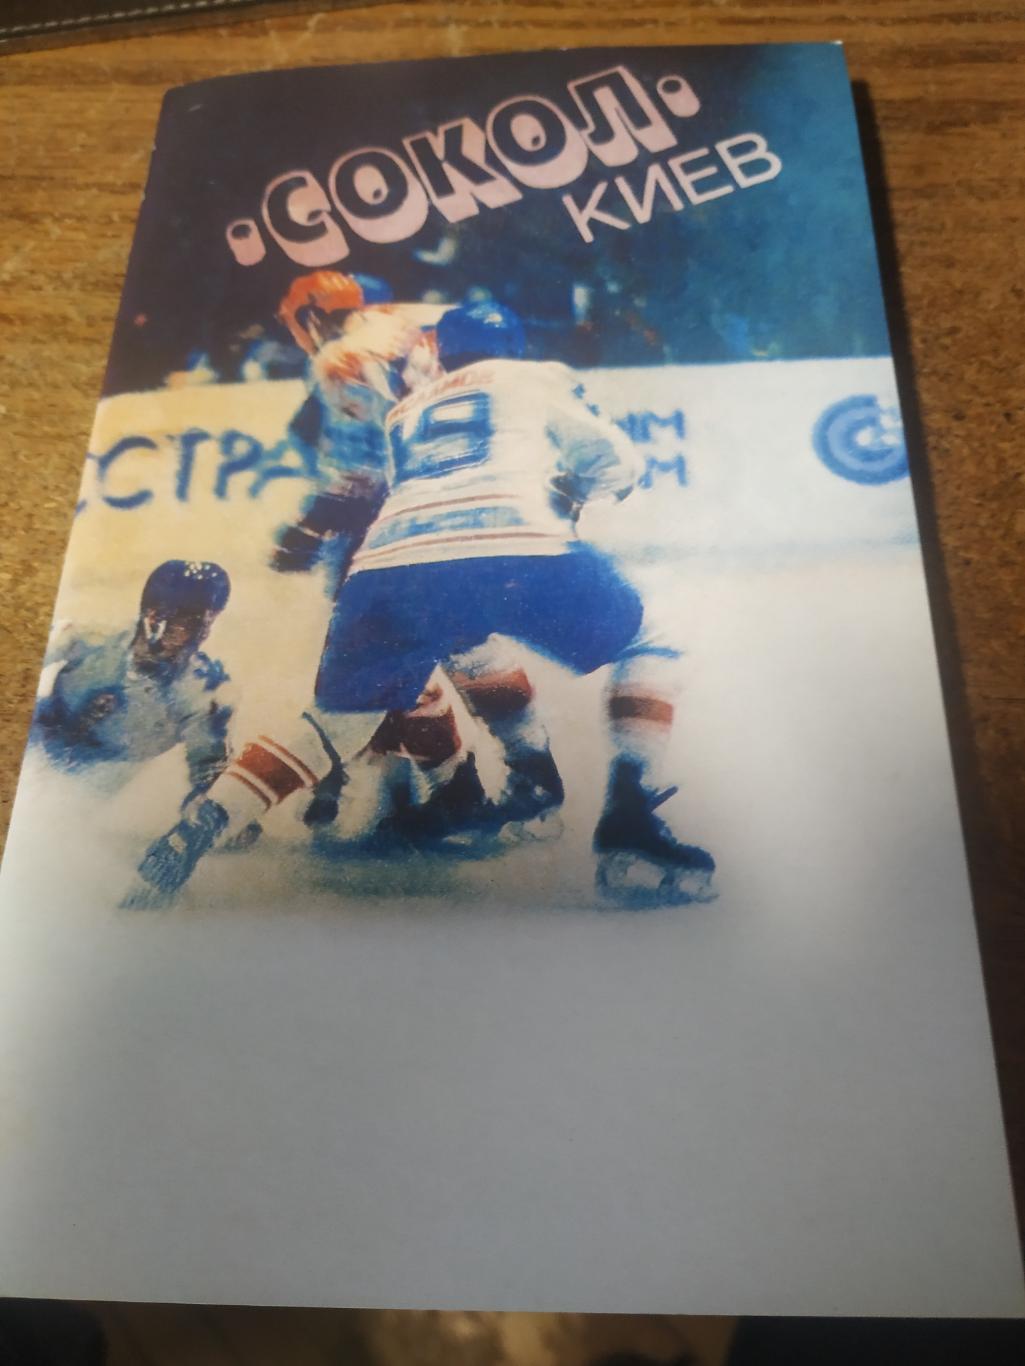 СОКОЛ Киев - бронзовый прнизёр Чемпионата СССР по хоккею 1984-85 гг